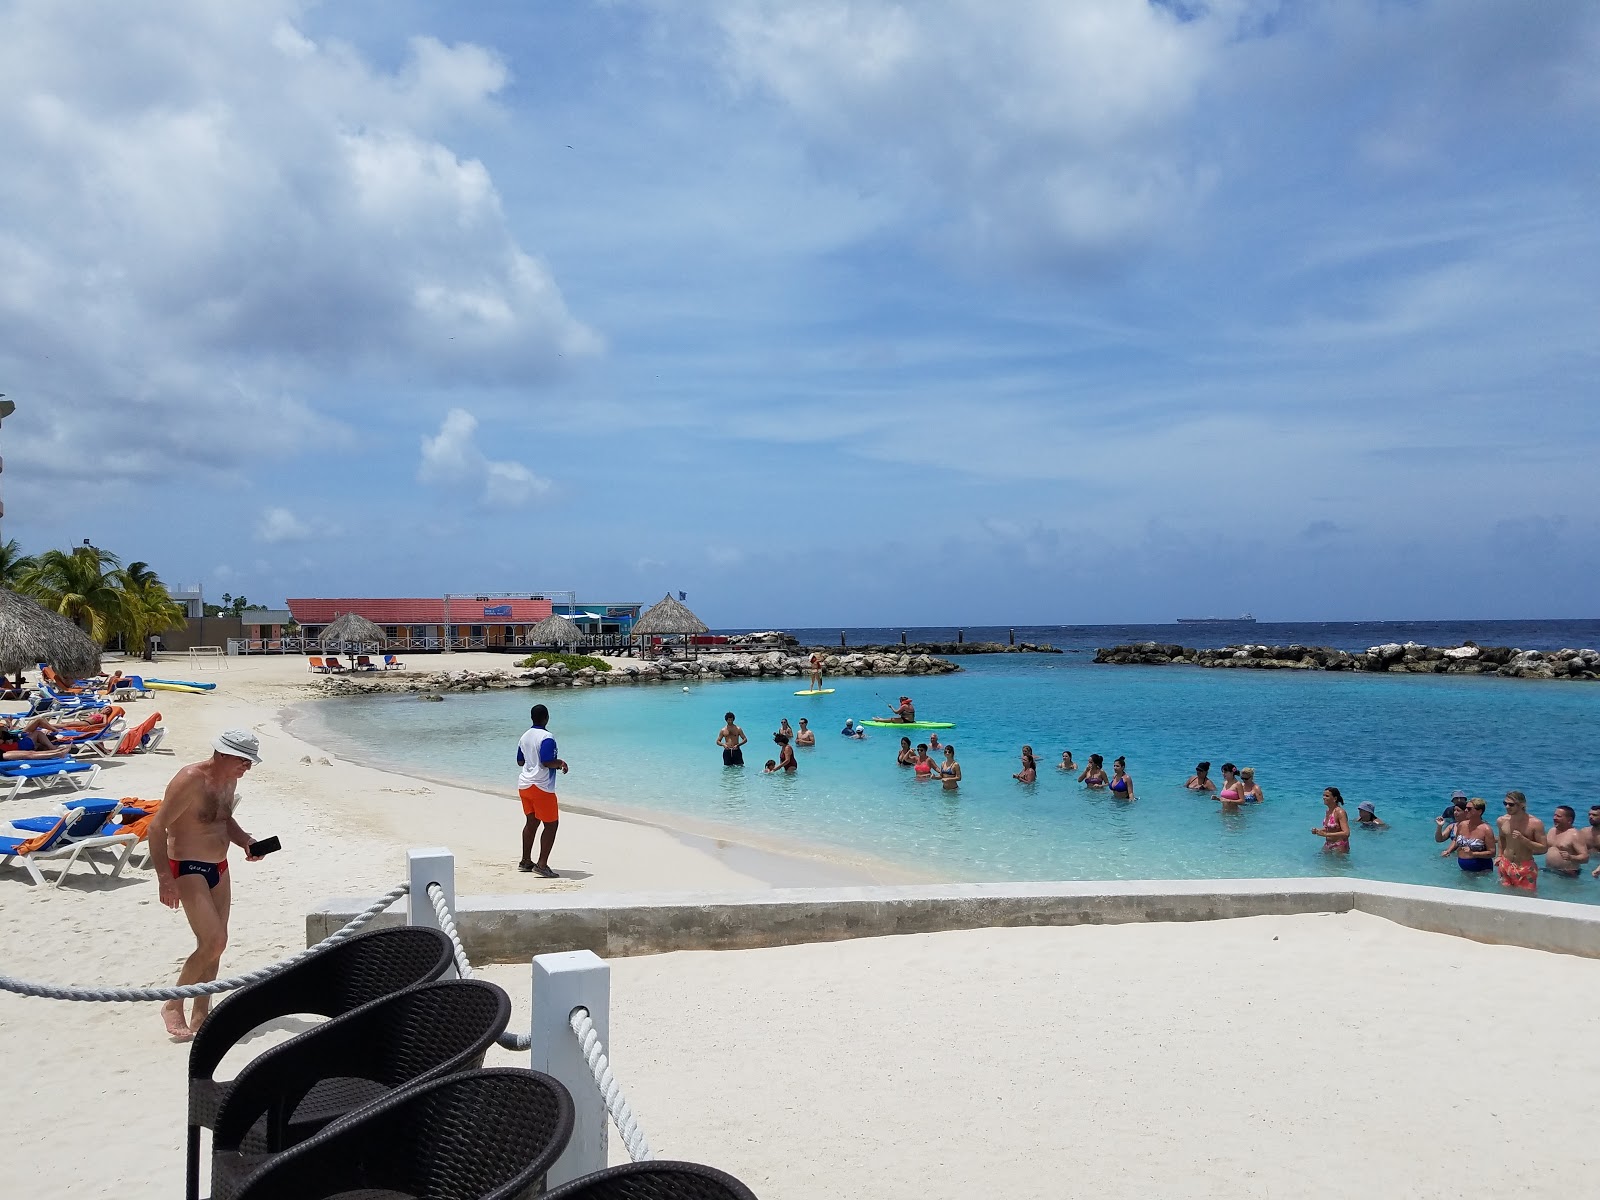 Sunscape Curacao'in fotoğrafı parlak ince kum yüzey ile